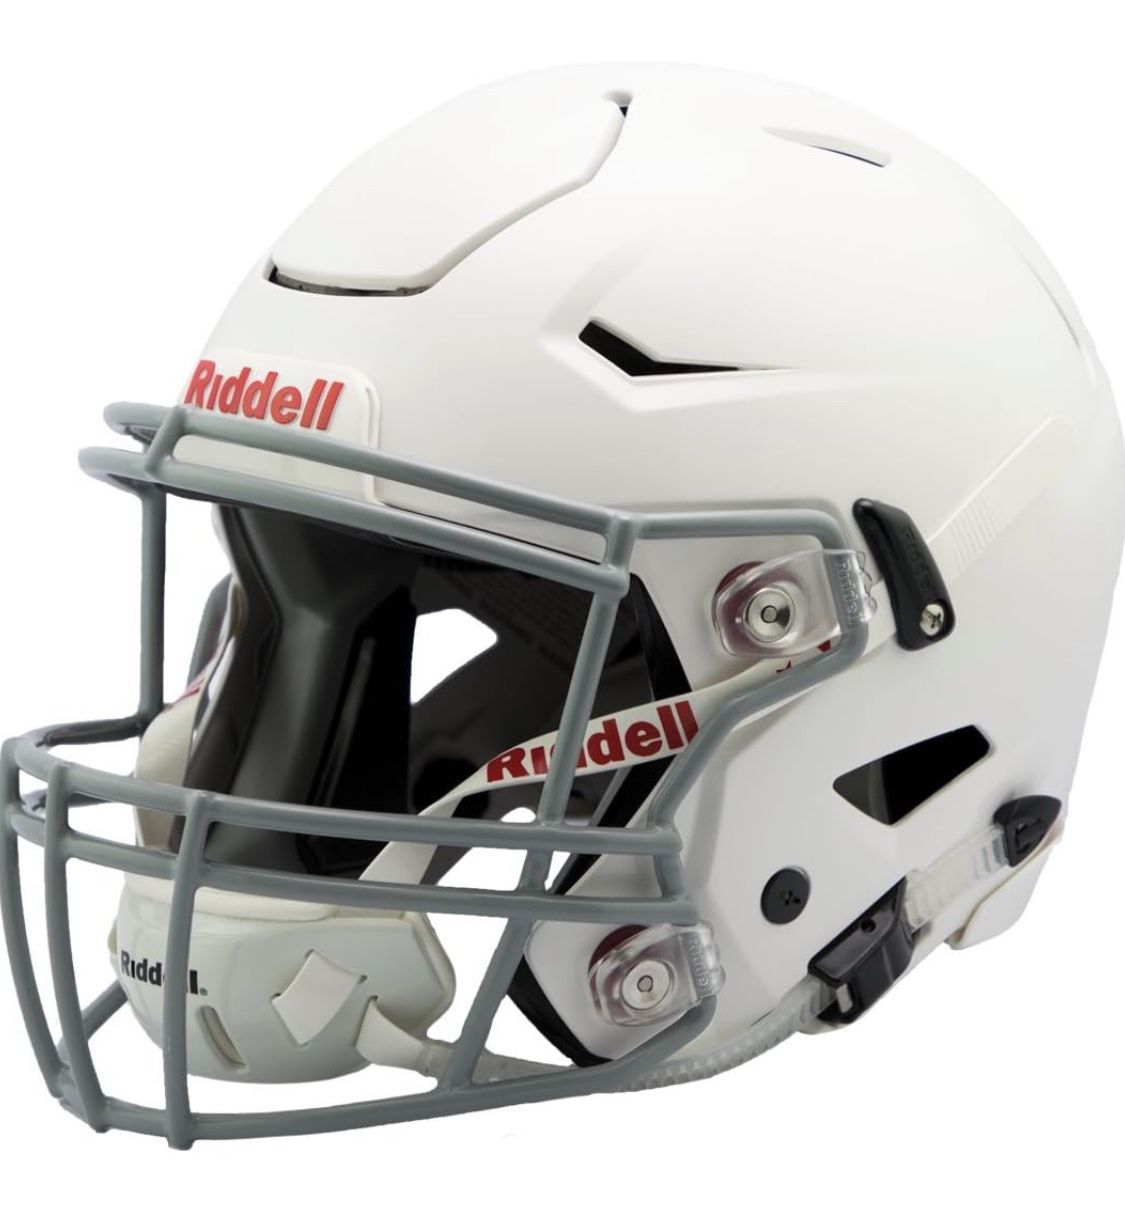 Riddell SpeedFlex Youth Helmet - Minor Use